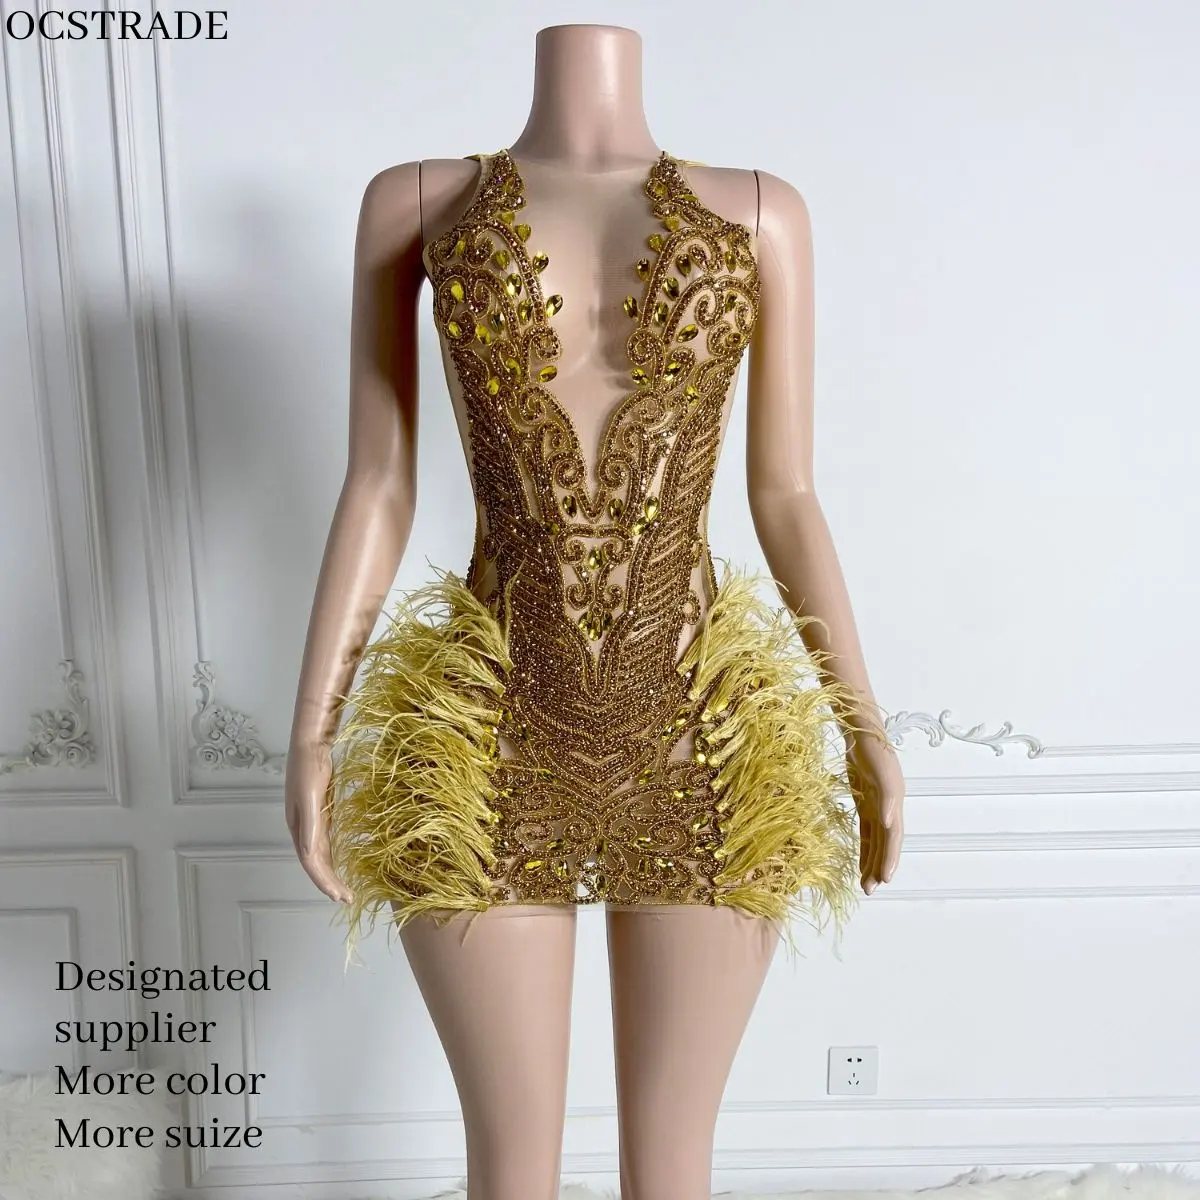 Ocstrade mùa hè lưới lông bên phong cách thời trang của phụ nữ ăn mặc quây sequin lấp lánh Ngắn Vàng Kim Cương Câu lạc bộ ăn mặc cho phụ nữ